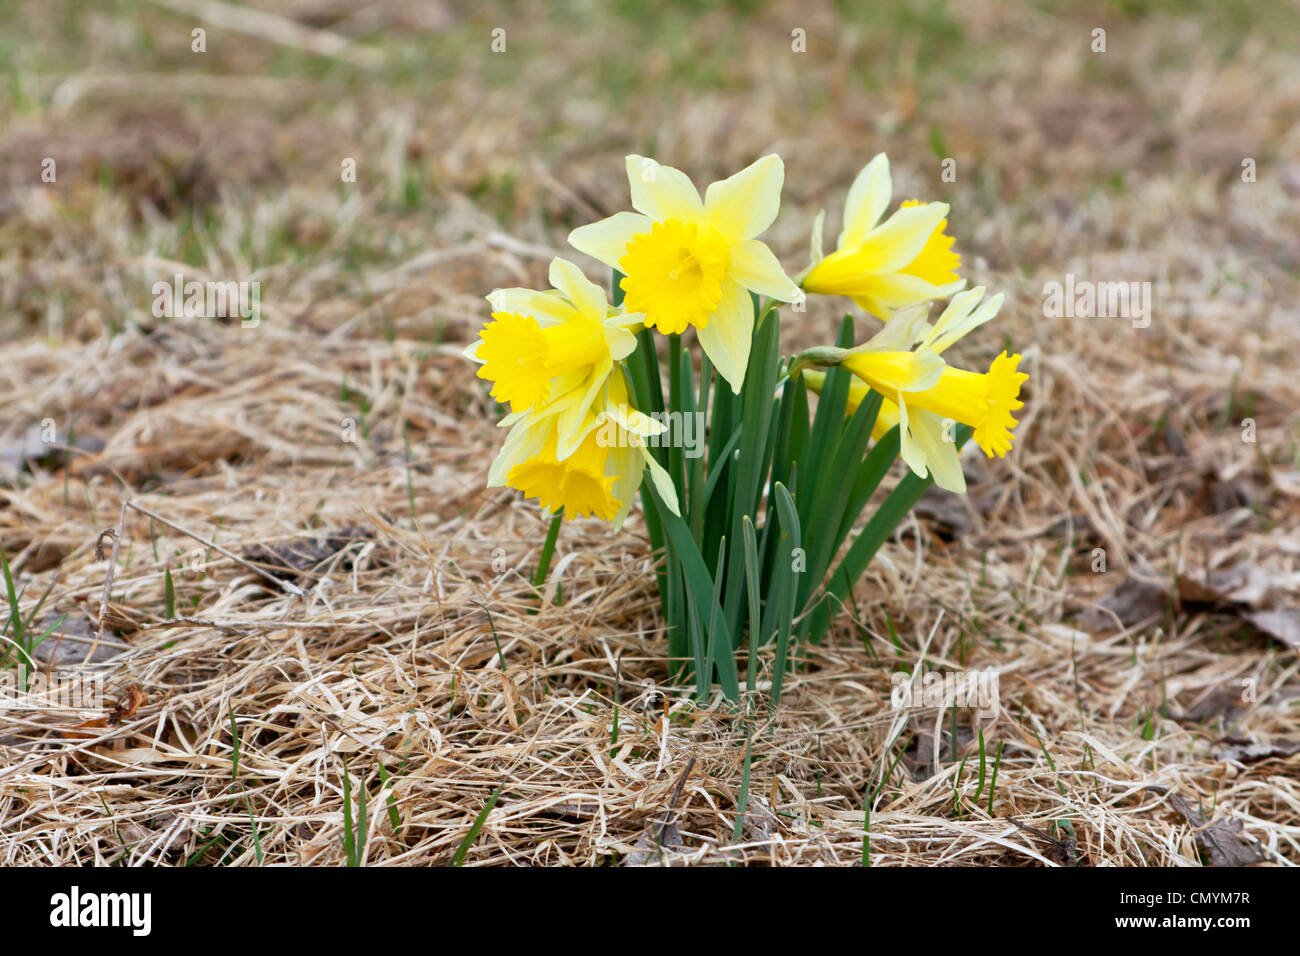 yellow daffodil Stock Photo